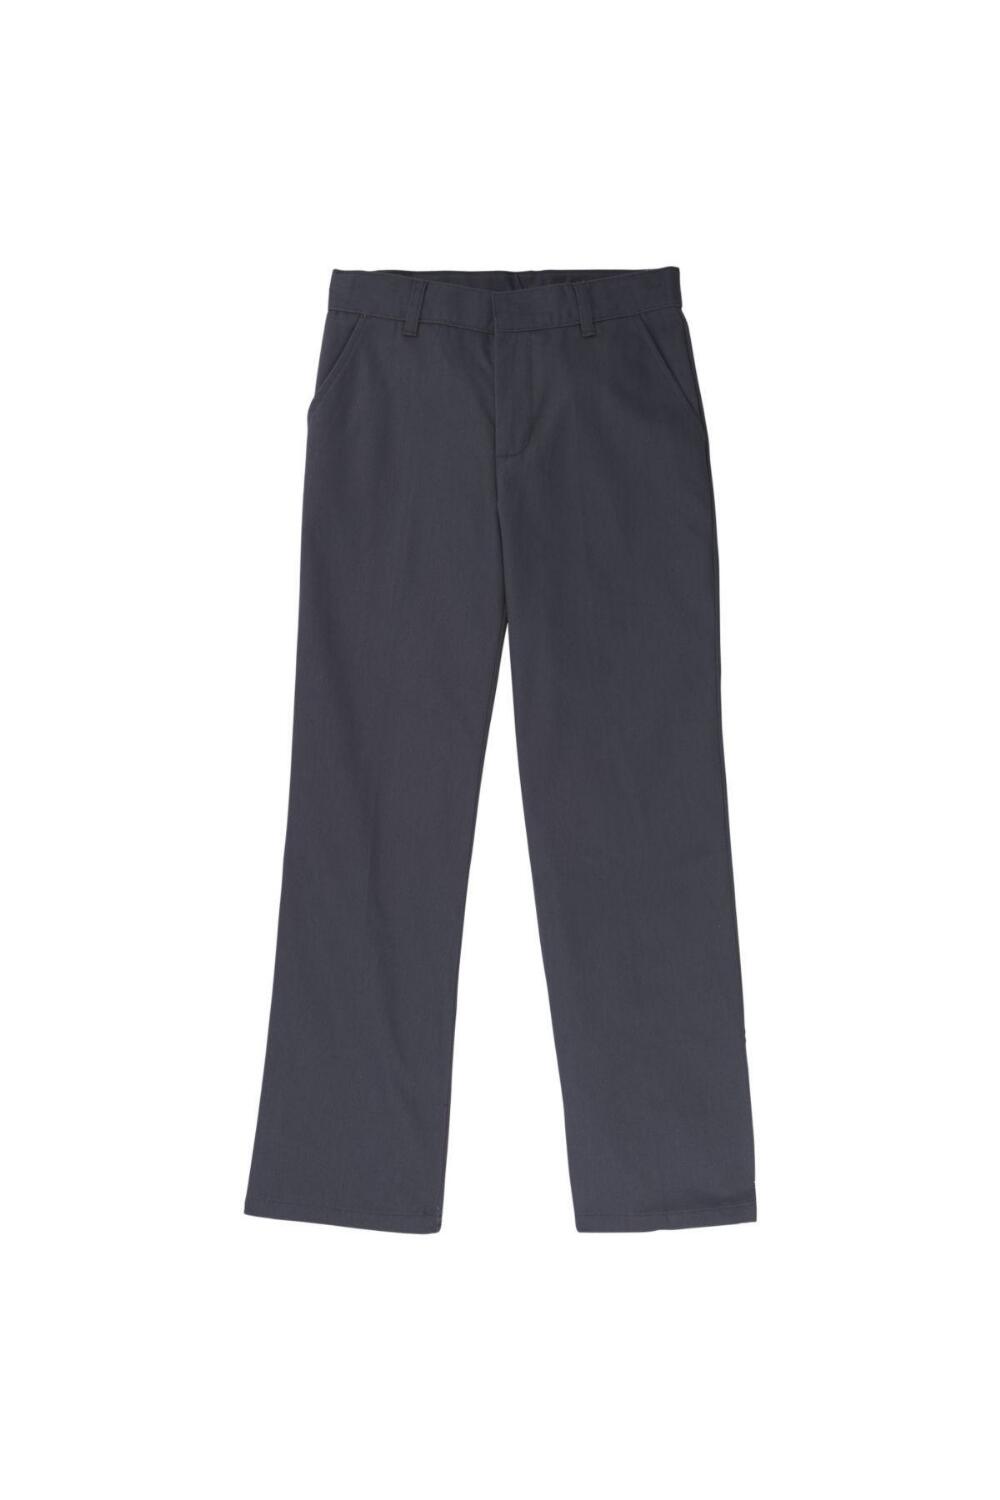 Boy's Adjustable Waist Double Knee Pant (Pant Color: Grey - SWCS, Pant Size: Size 4)